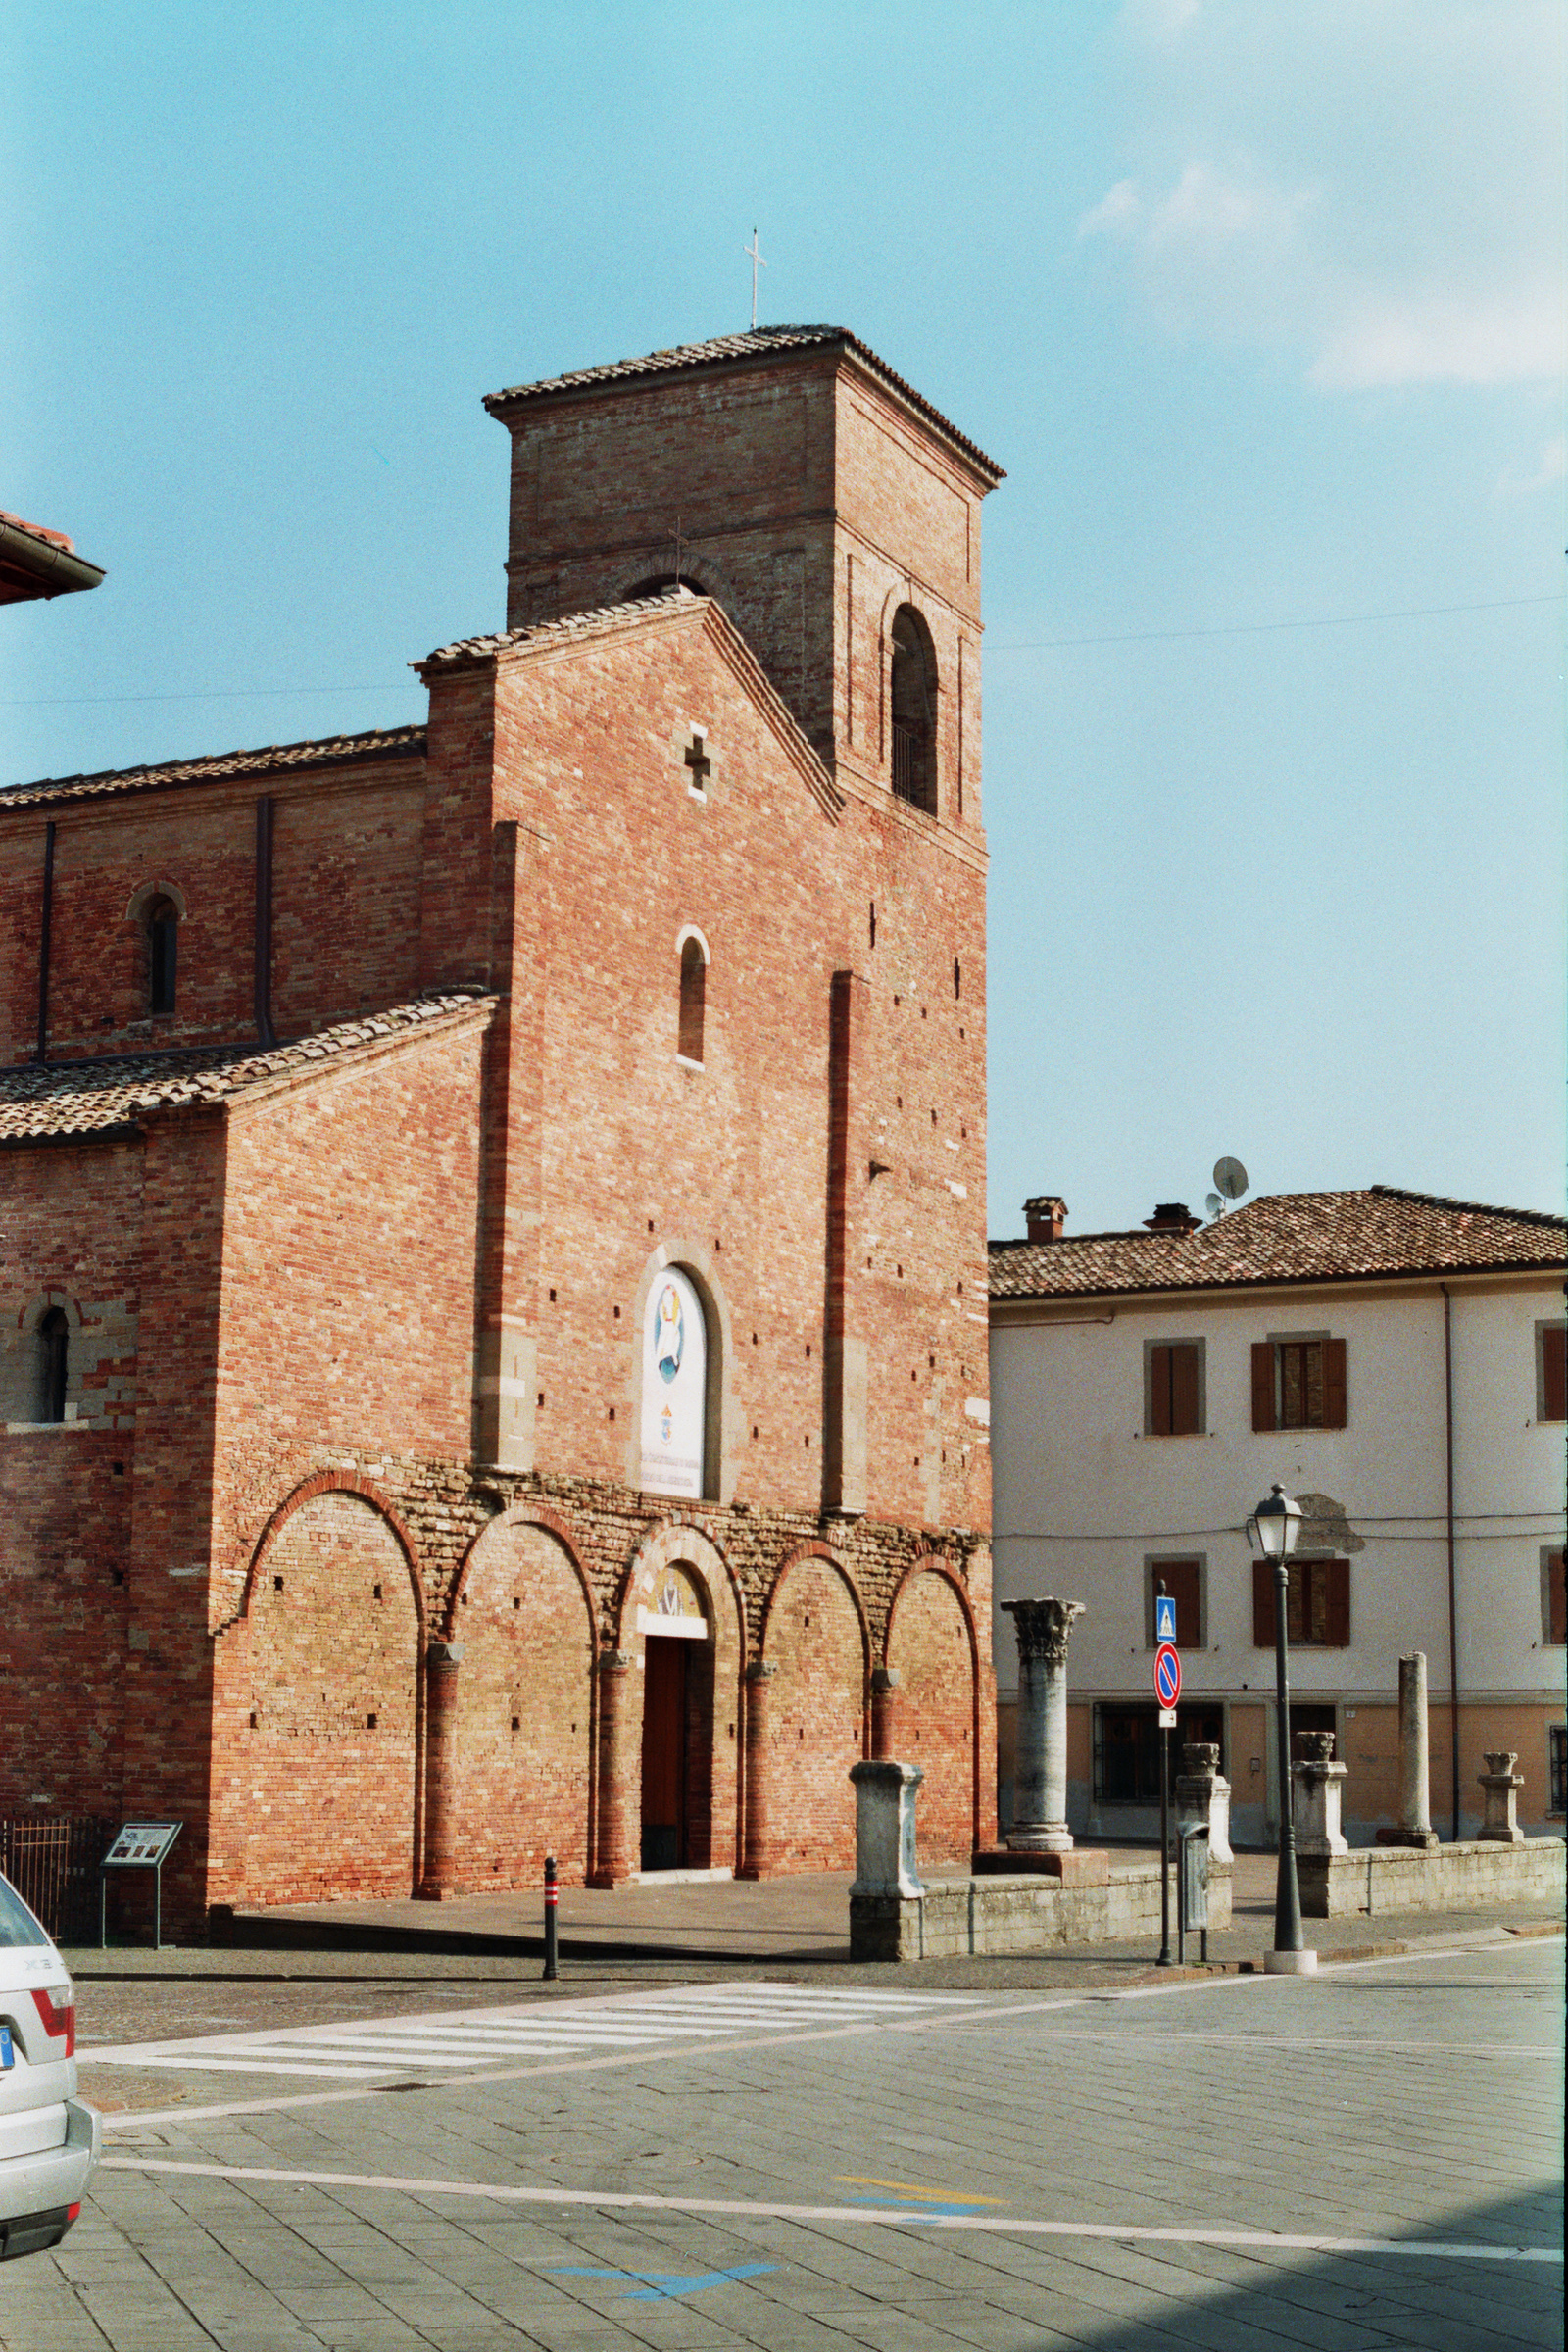 foto: https://upload.wikimedia.org/wikipedia/commons/3/3c/Basilica_concattedrale_di_Sarsina_scorcio.jpg